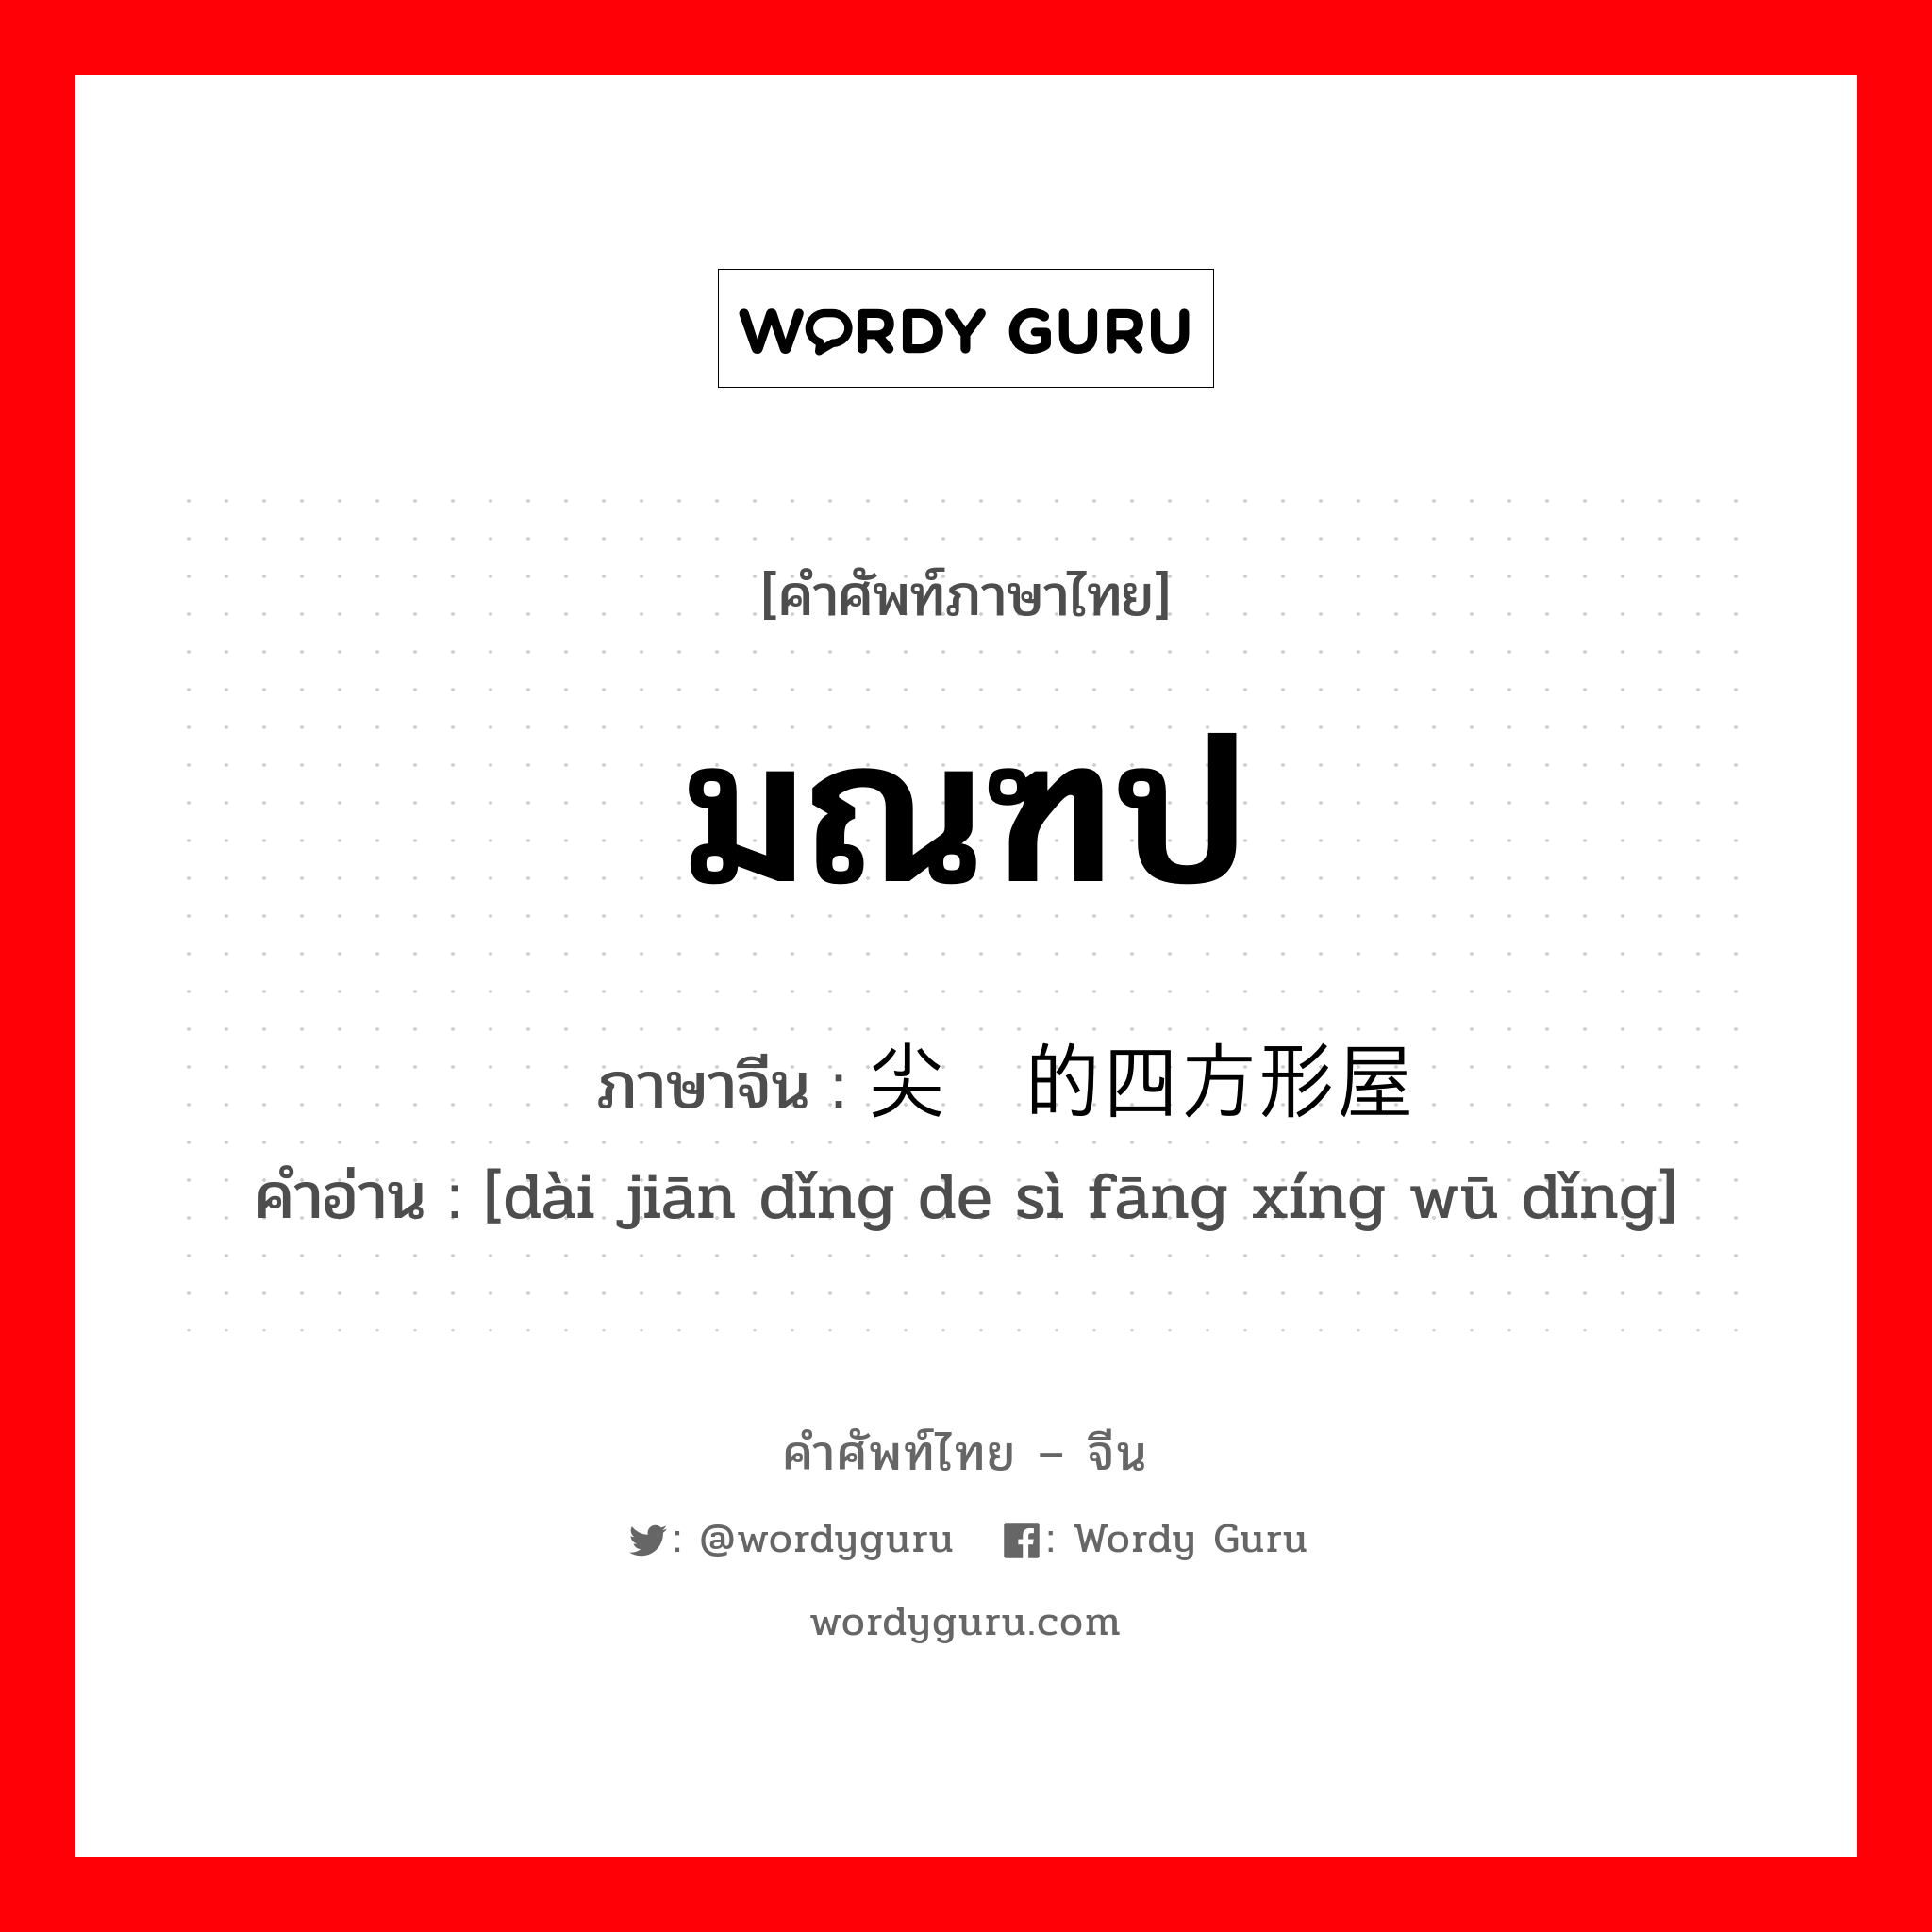 มณฑป ภาษาจีนคืออะไร, คำศัพท์ภาษาไทย - จีน มณฑป ภาษาจีน 带尖顶的四方形屋顶 คำอ่าน [dài jiān dǐng de sì fāng xíng wū dǐng]